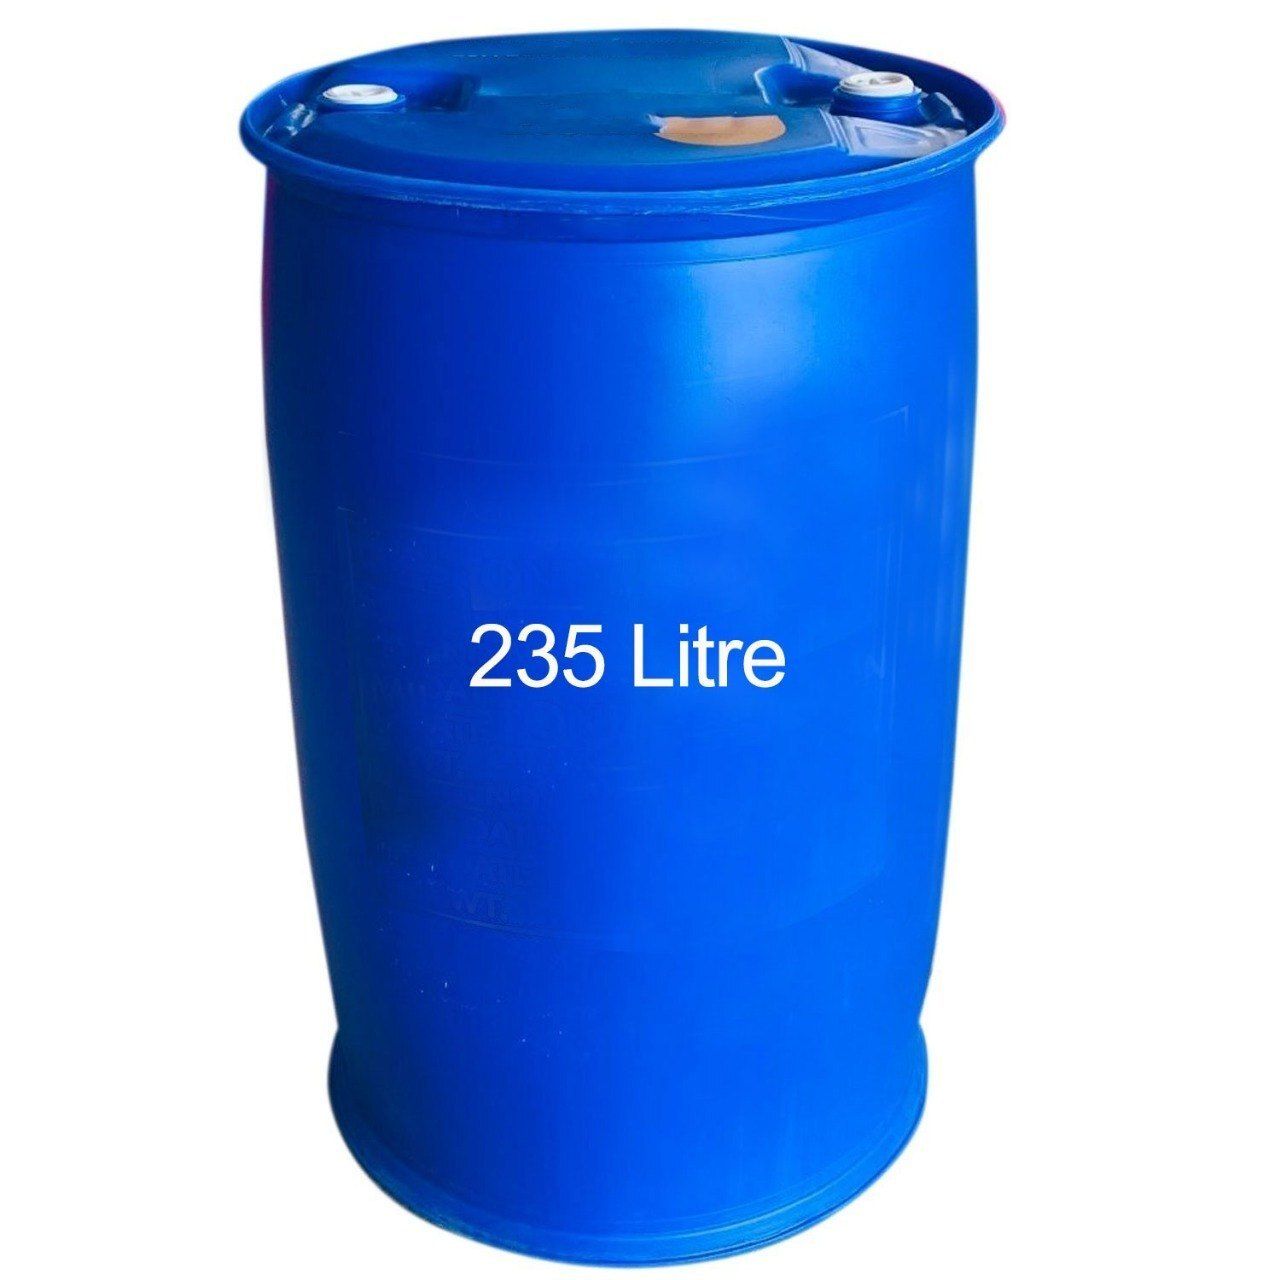 235 Litre Plastic Barrels